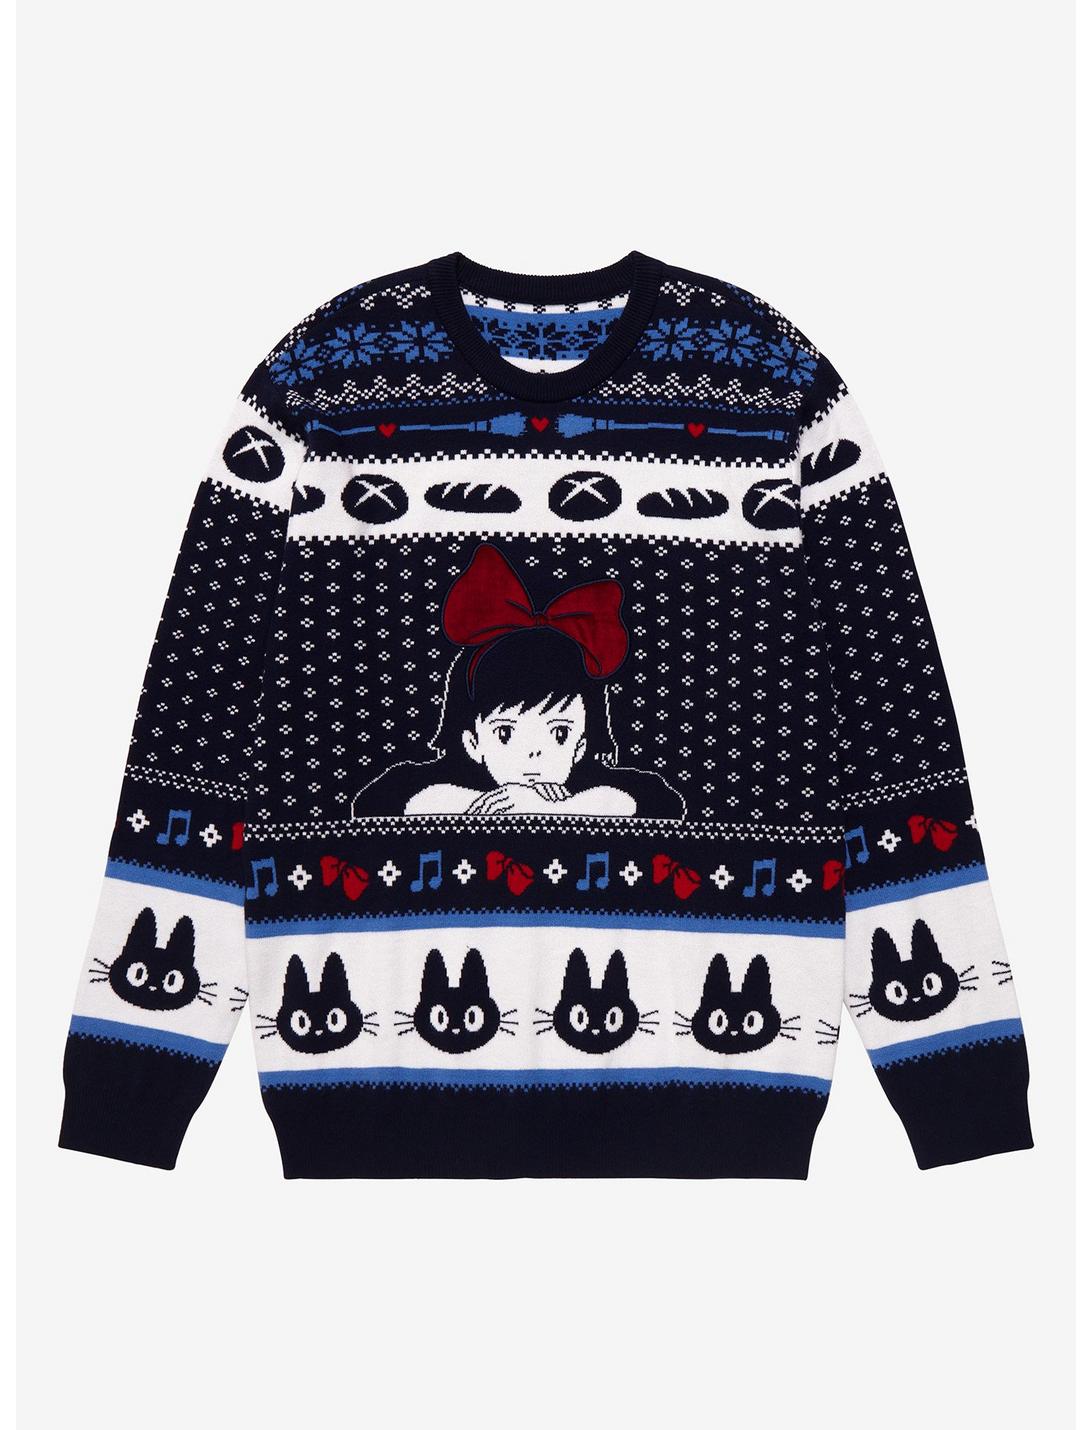 Studio Ghibli Kiki's Delivery Service Kiki Holiday Sweater - BoxLunch ...